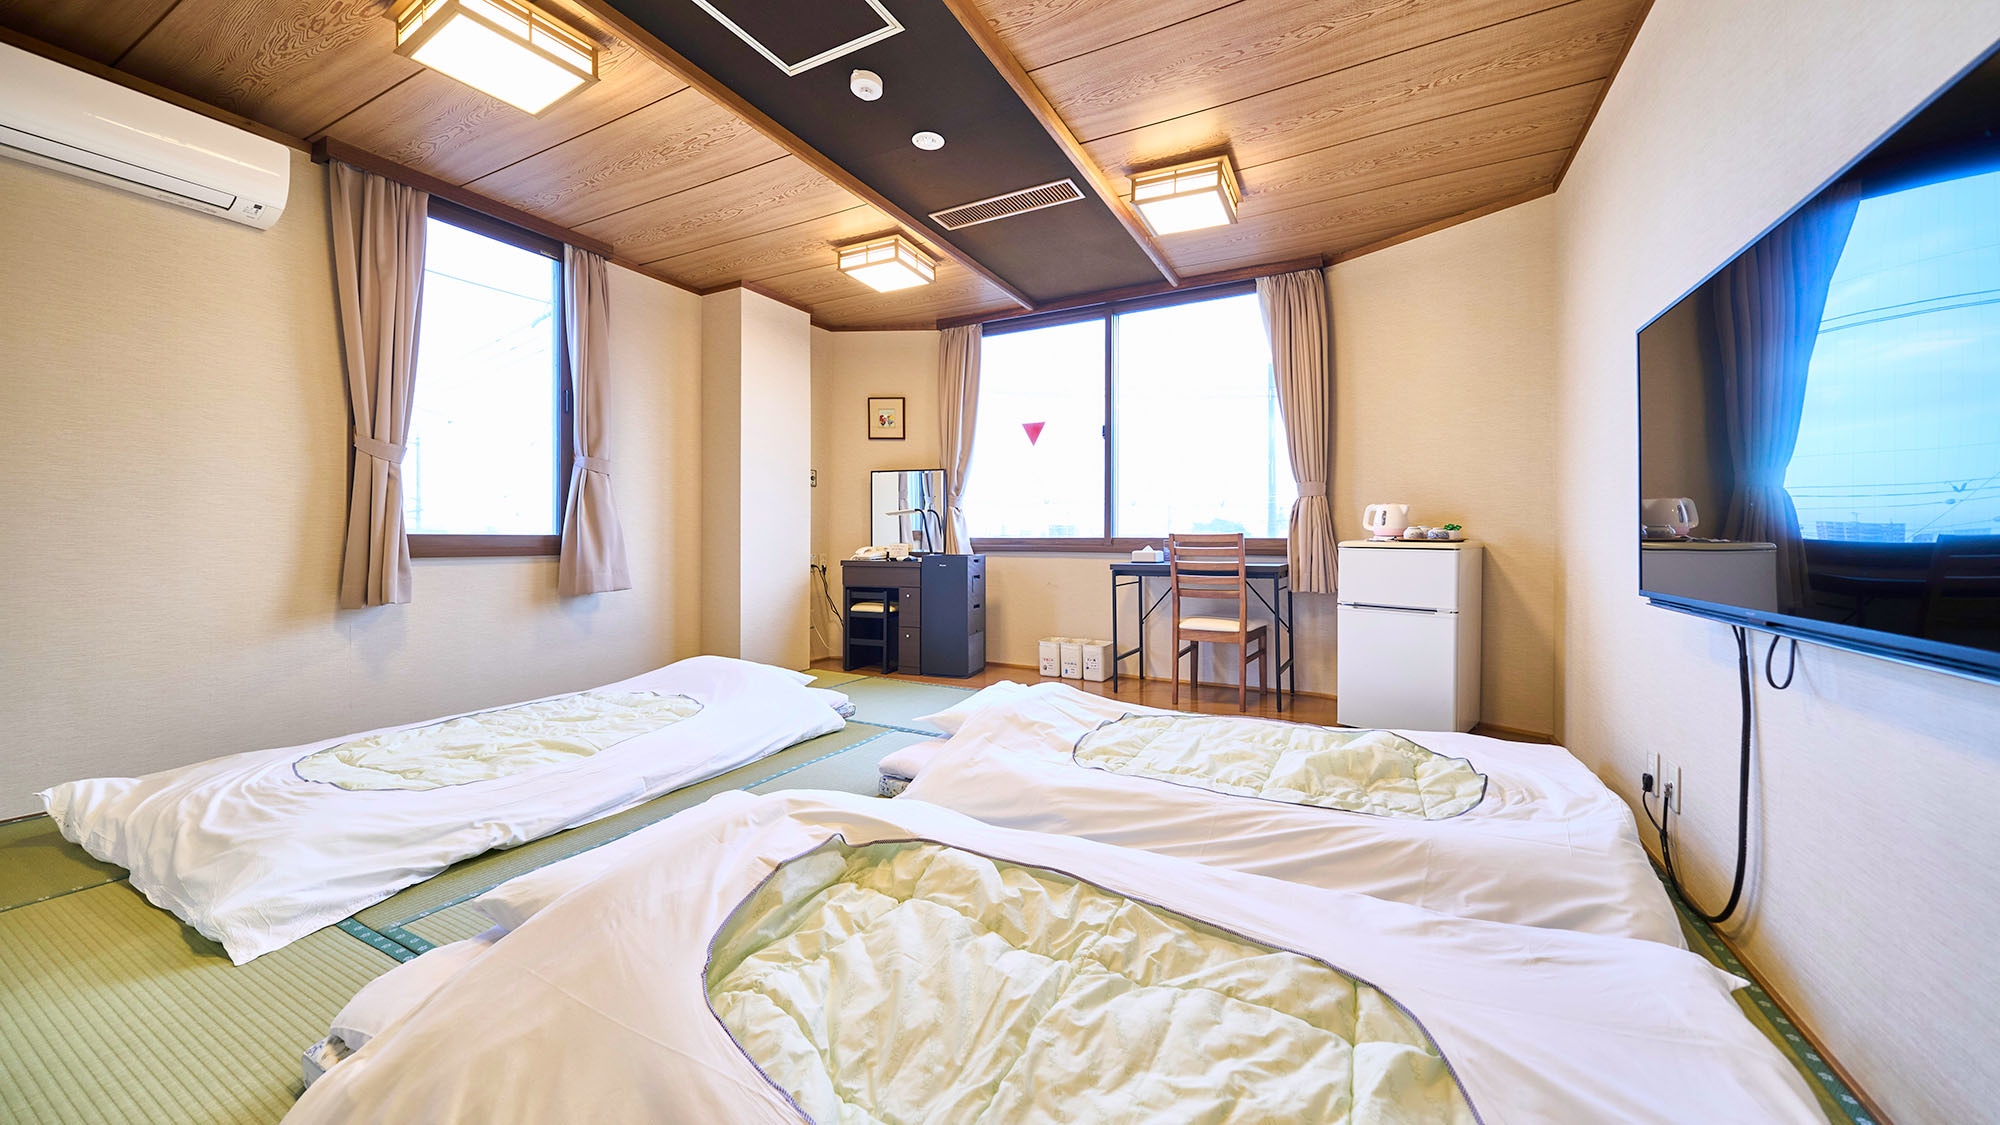 ・【일본식 A】 최대 5명까지 숙박하실 수 있는 객실입니다. 넓은 객실에서 천천히 즐겨보세요